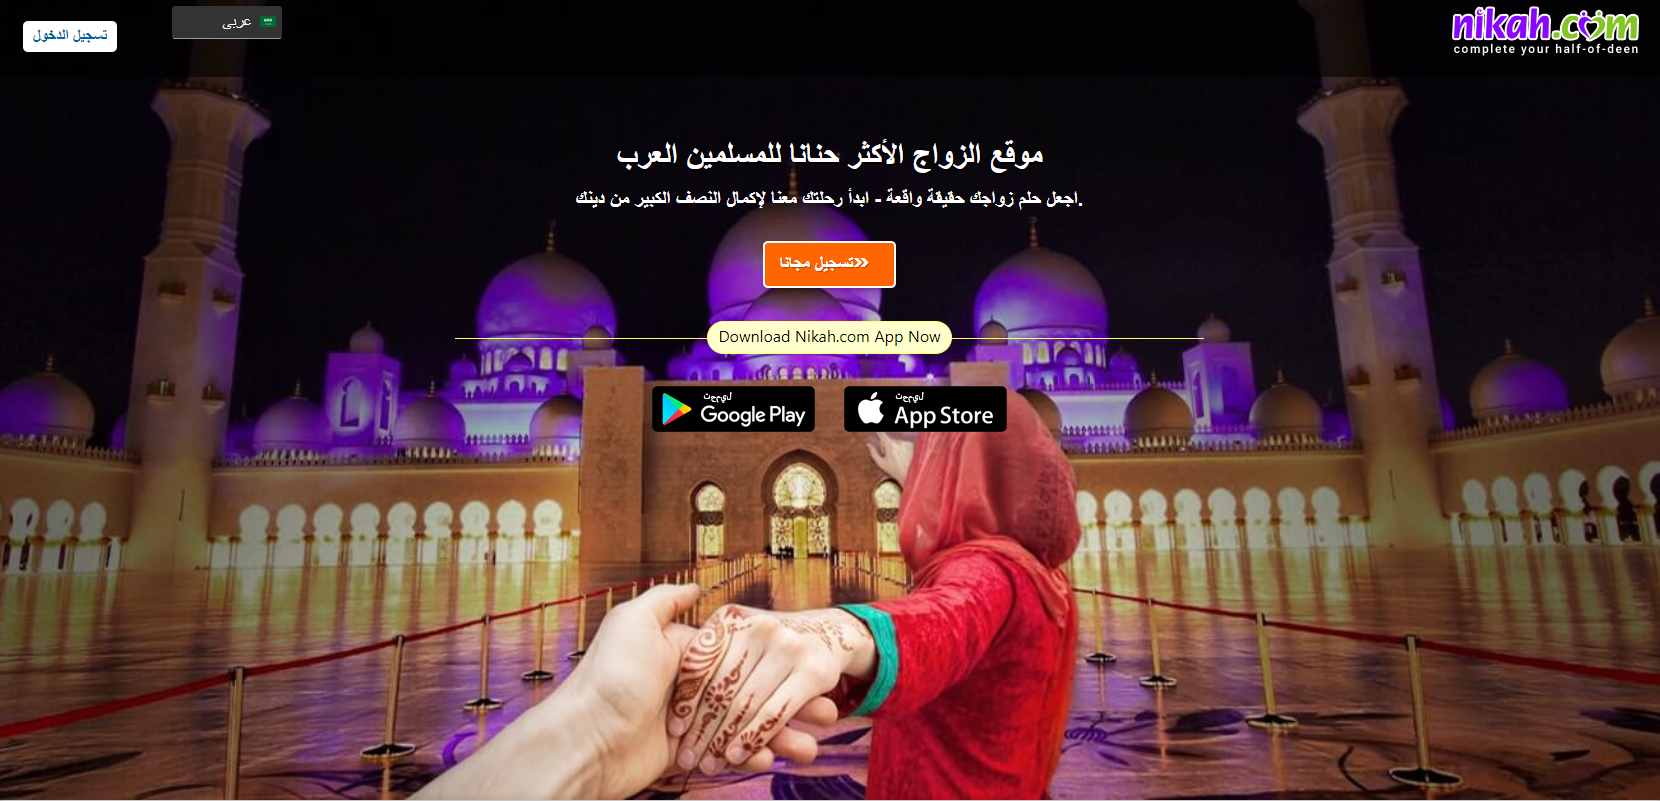 arabsaf.com (2)